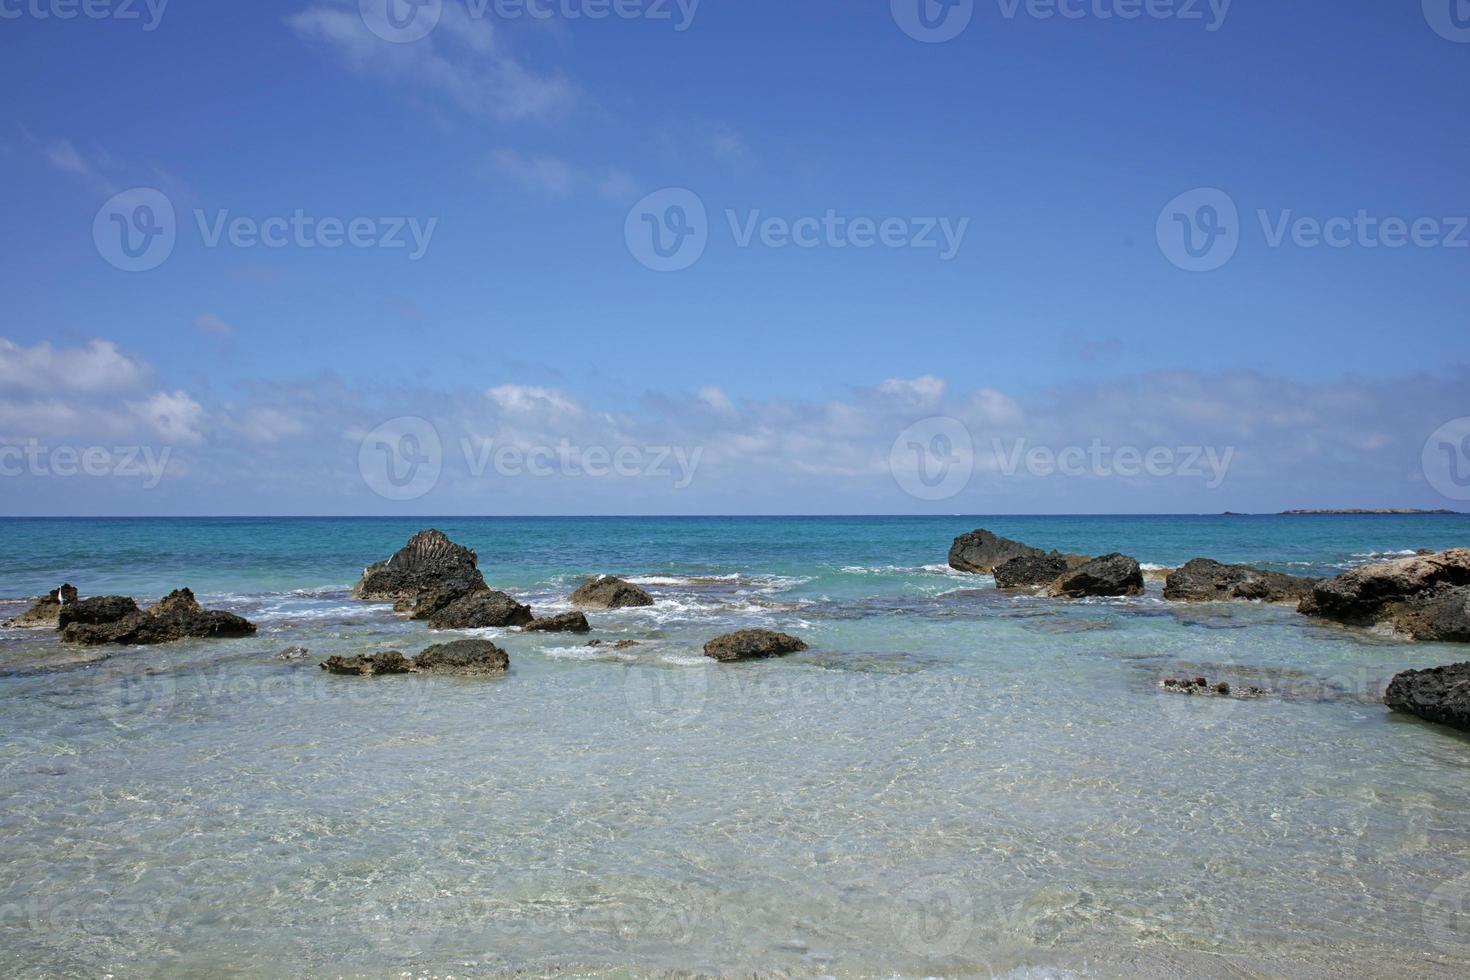 falassarna strand blauwe lagune Kreta eiland zomer 2020 covid19 vakantie foto